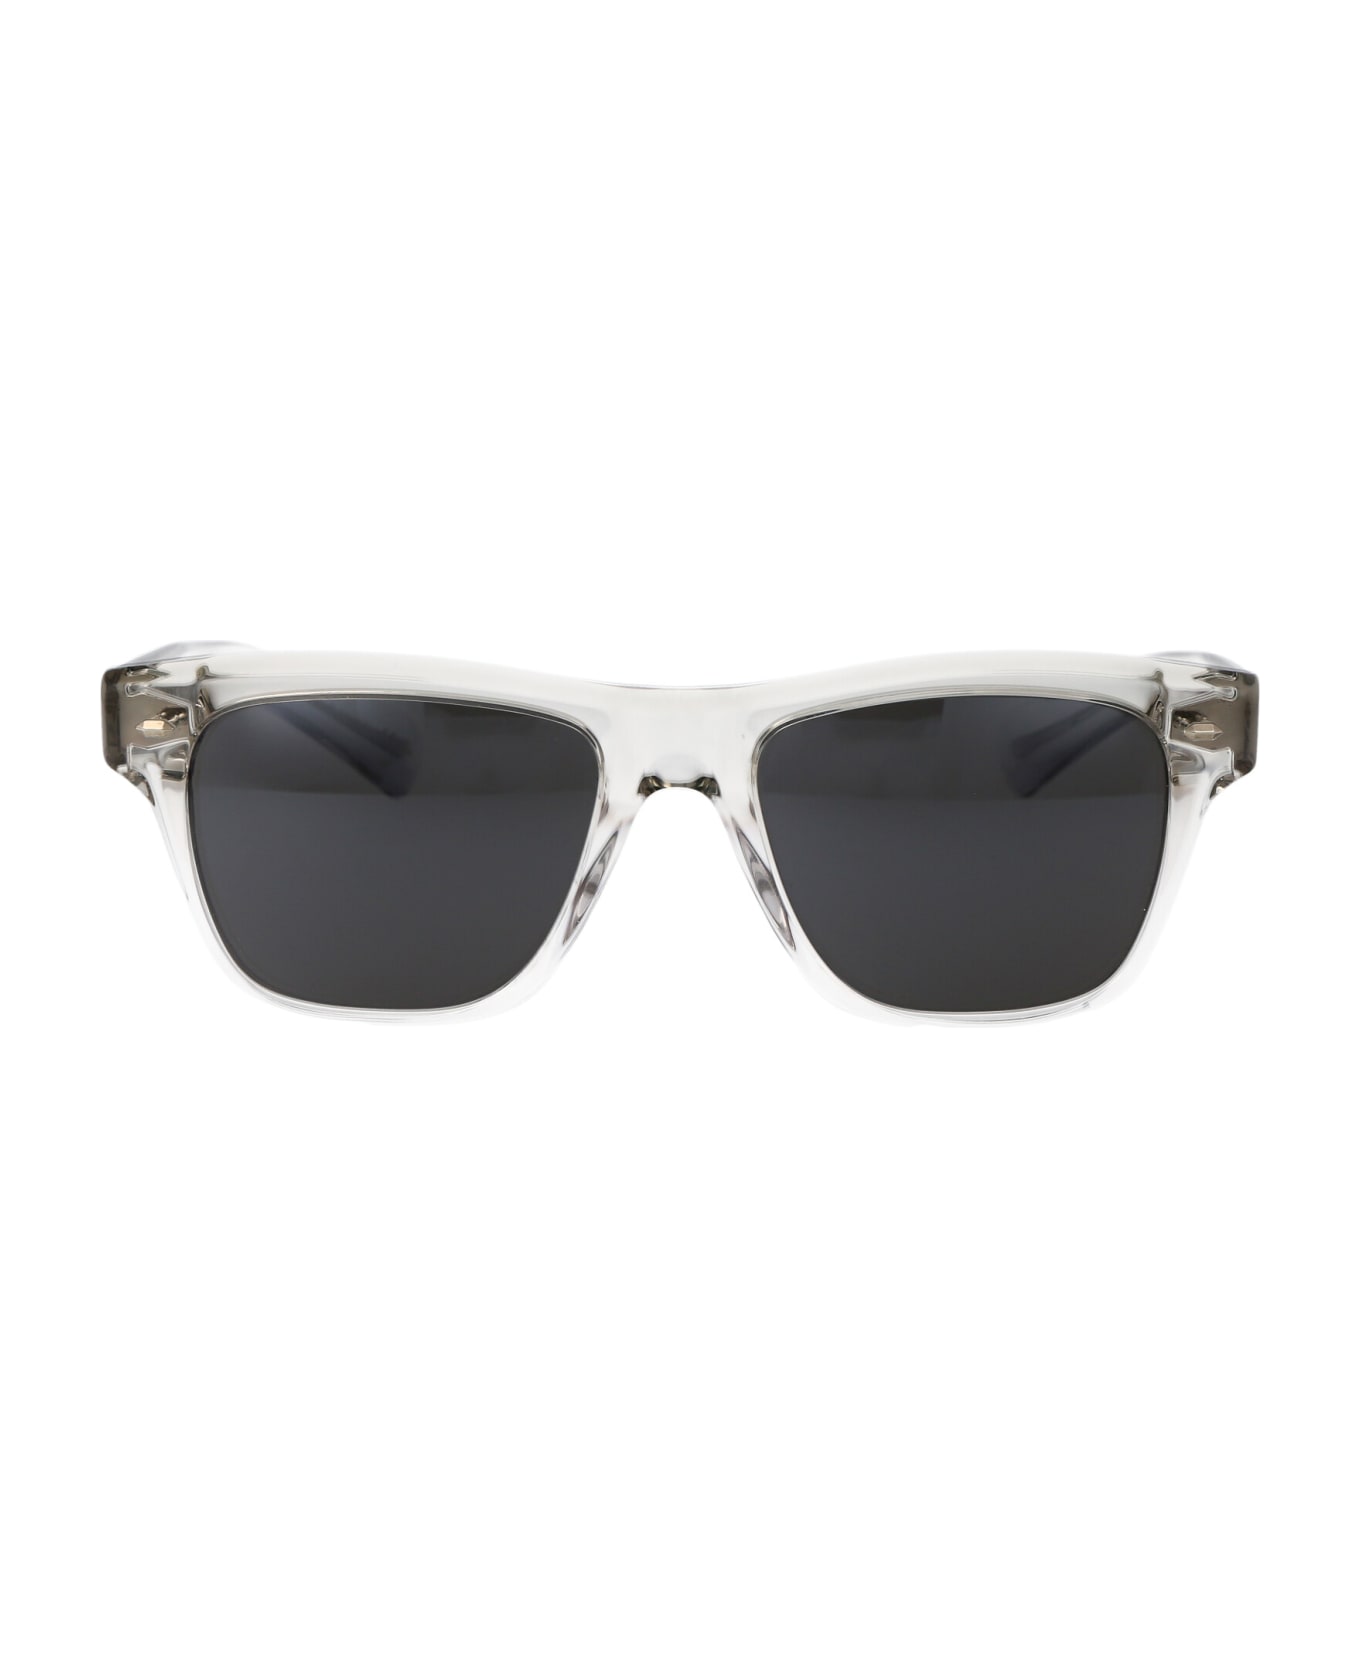 Oliver Peoples Oliver Sixties Sun Sunglasses - 1752R5 Black Diamond/Crystal Gradient サングラス